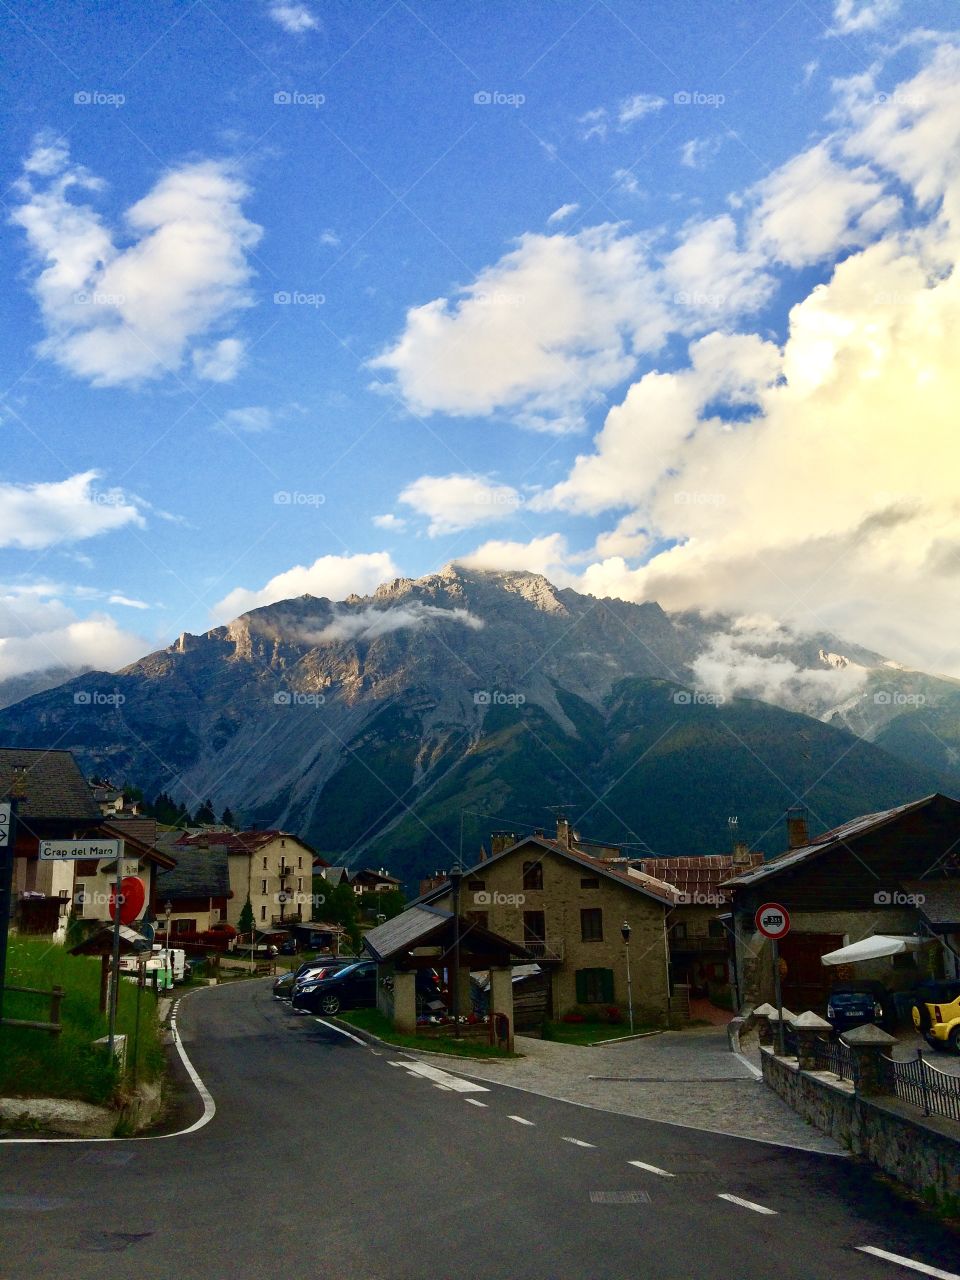 Valtellina Alps, Oga, Bormio, Mountain view on a summer evening 